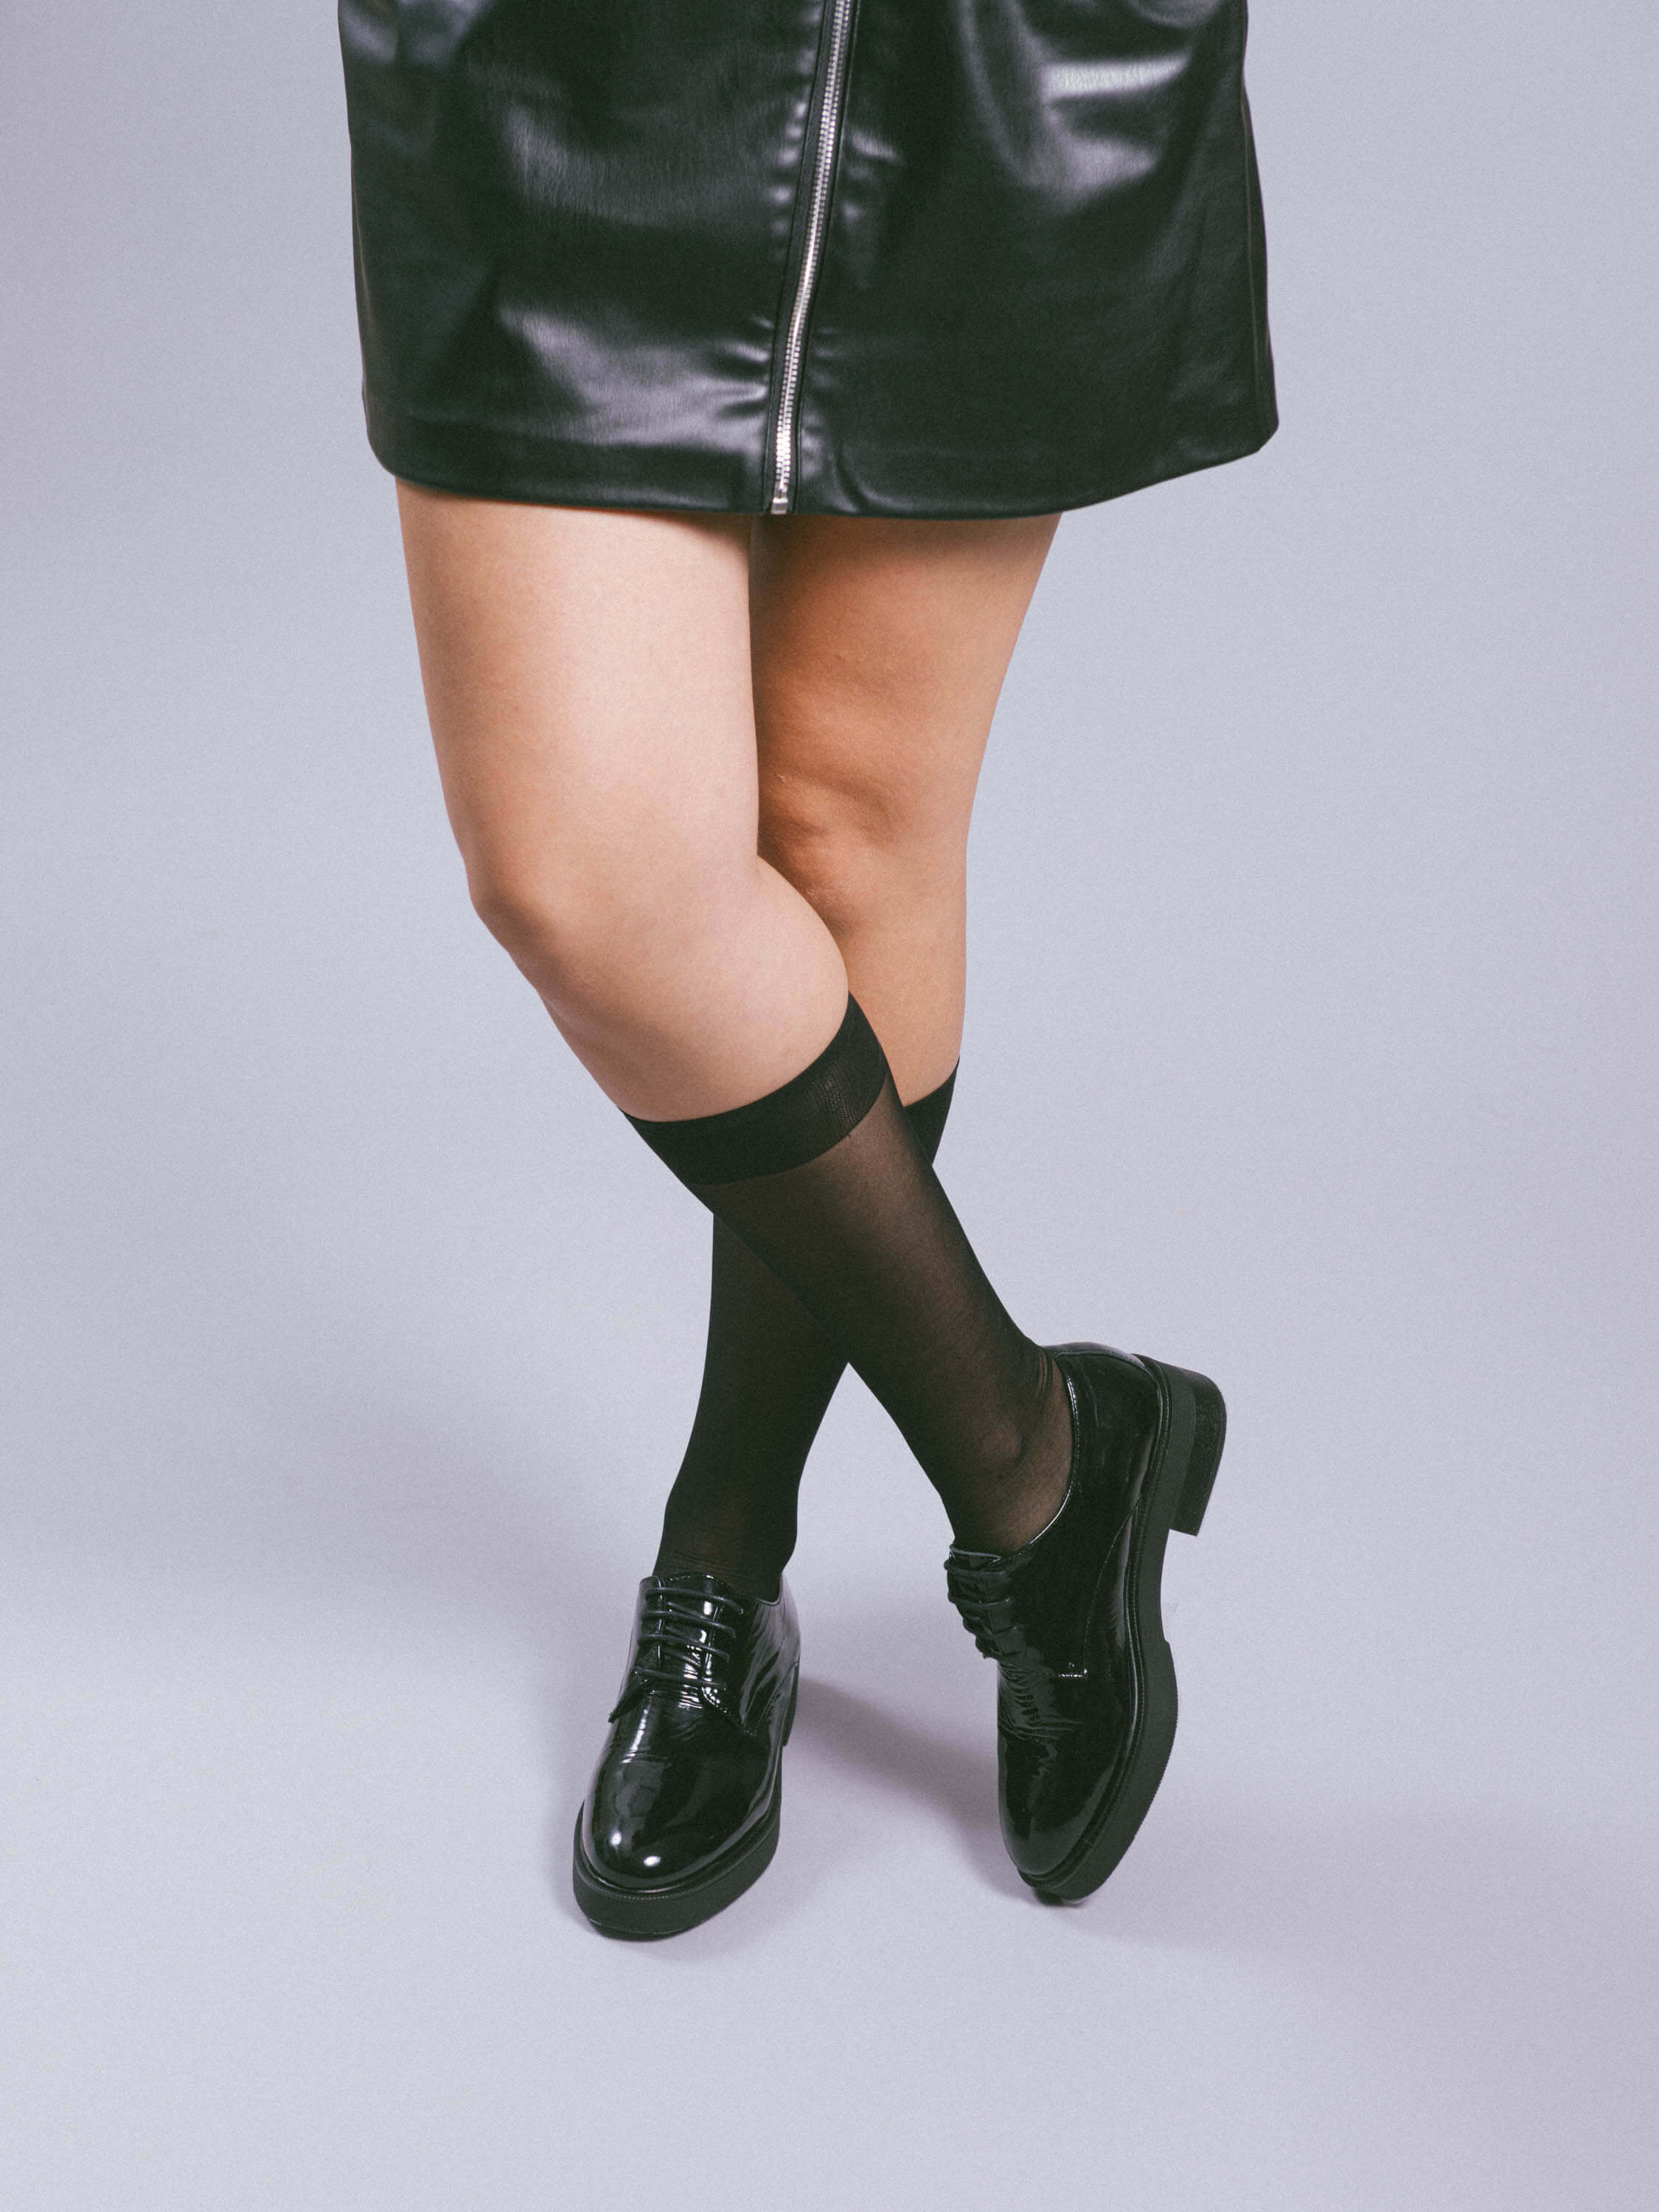 zapato de vestir de mujer charol negro. Zapato cómodo y ligero